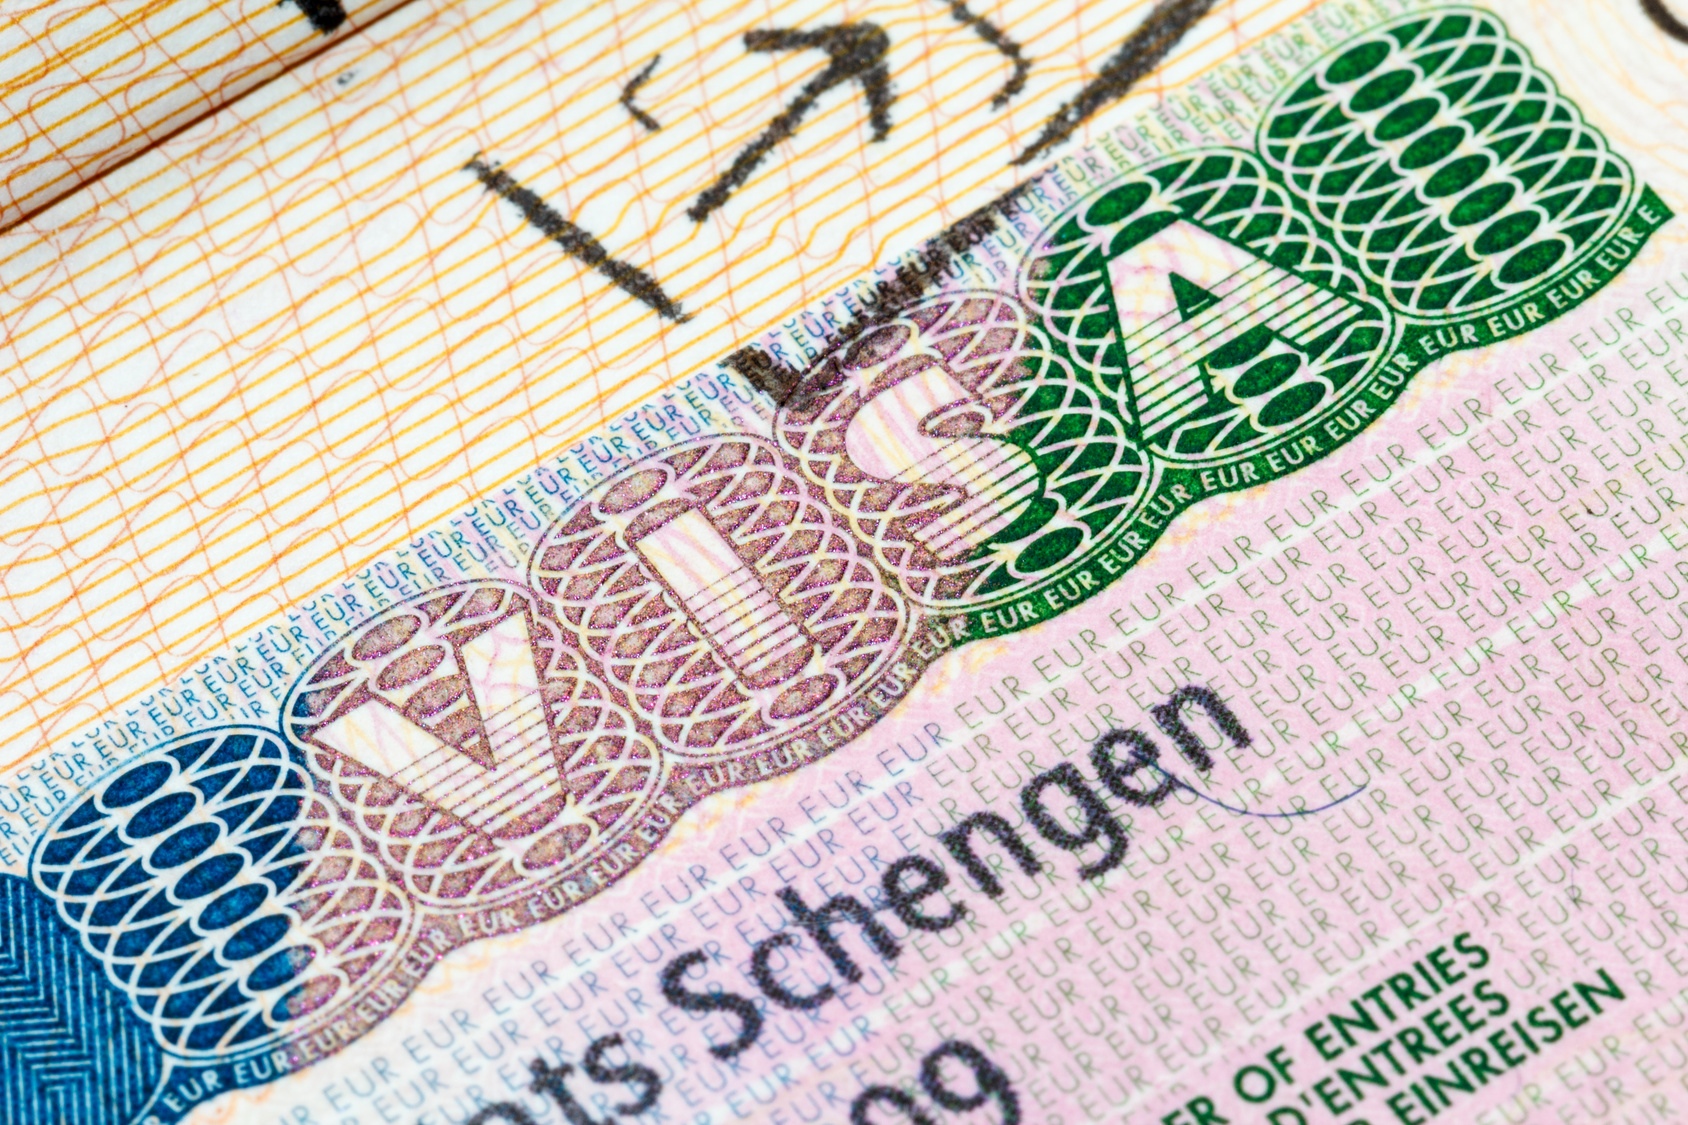 Lire la suite à propos de l’article Escroquerie au visa : il se prévaut de liens avec le gouvernement pour gruger ses victimes